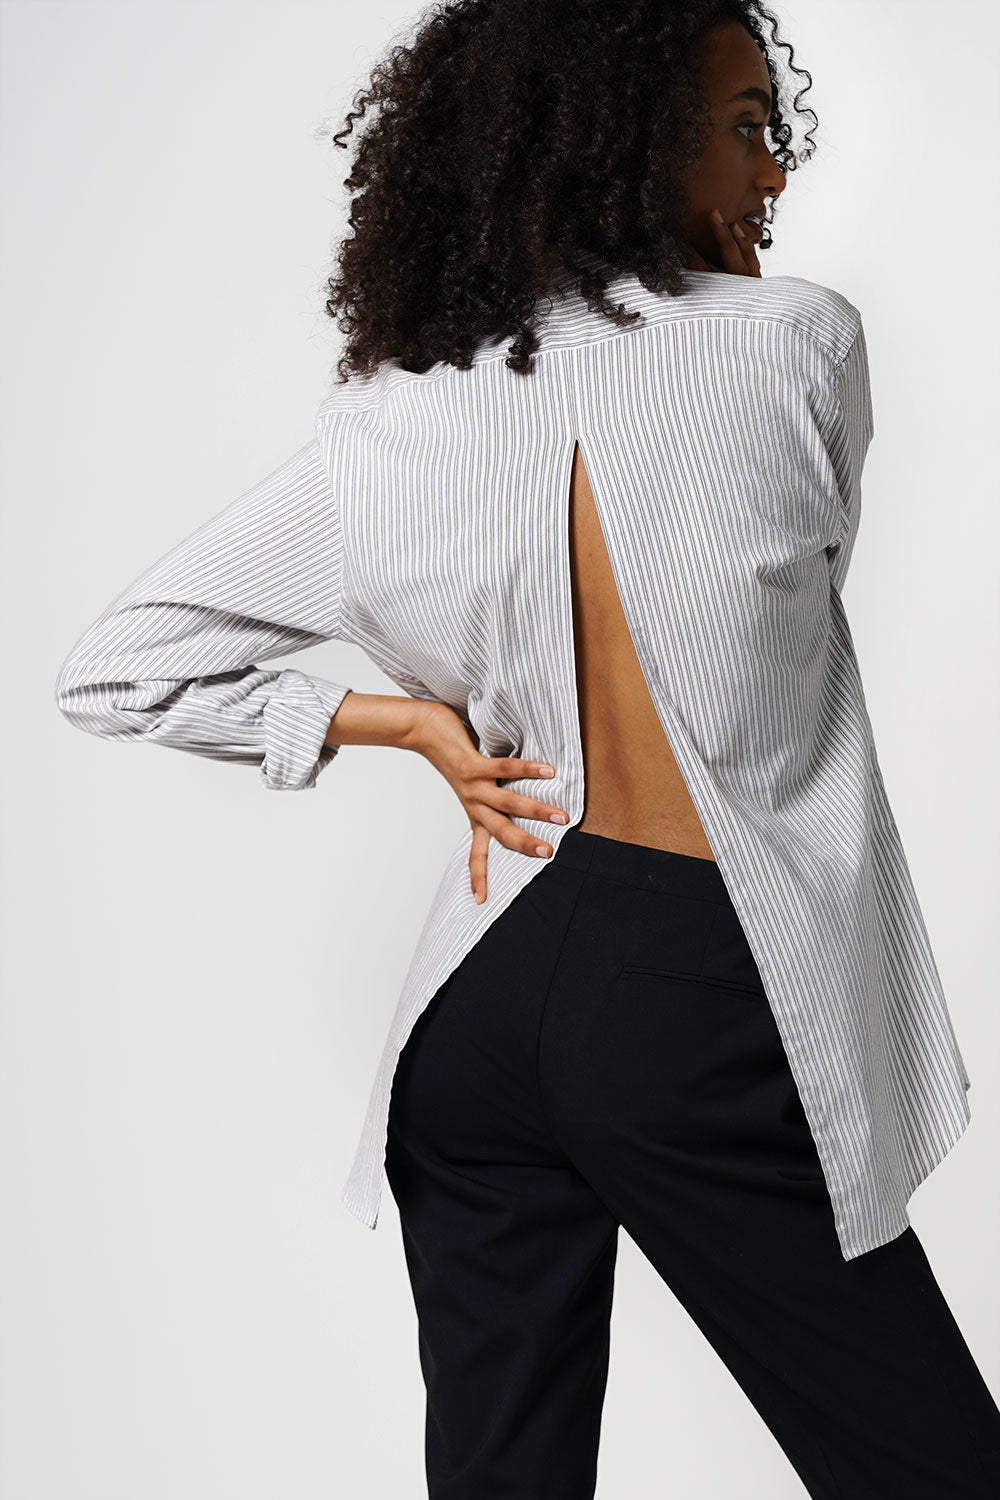 Miu Miu Pinstripe Shirt With Open Back Size S